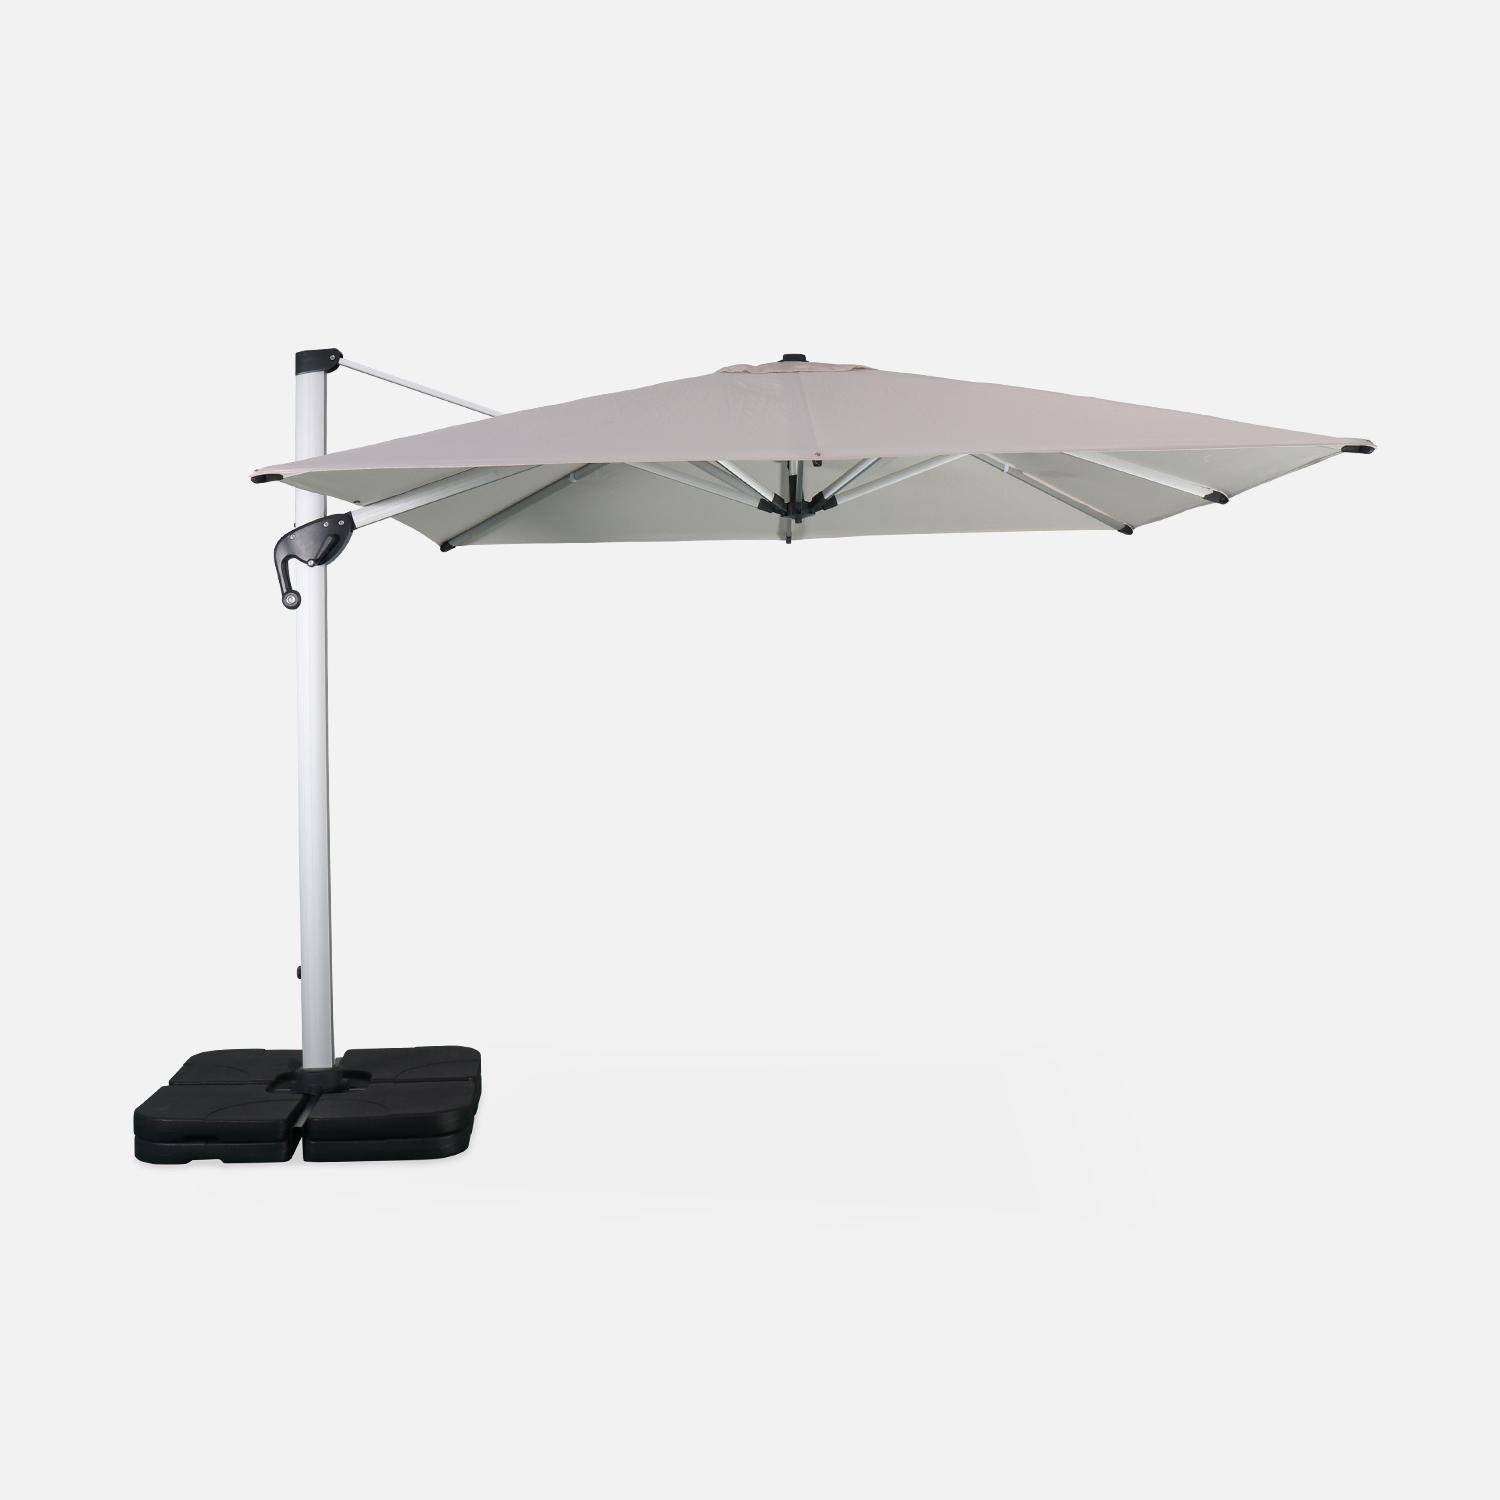 Parasol déporté haut de gamme carré 3x3m – PYLA Beige – Toile Sunbrella fabriquée en France par Dickson , structure en aluminium anodisé, rotatif, housse de protection Photo2